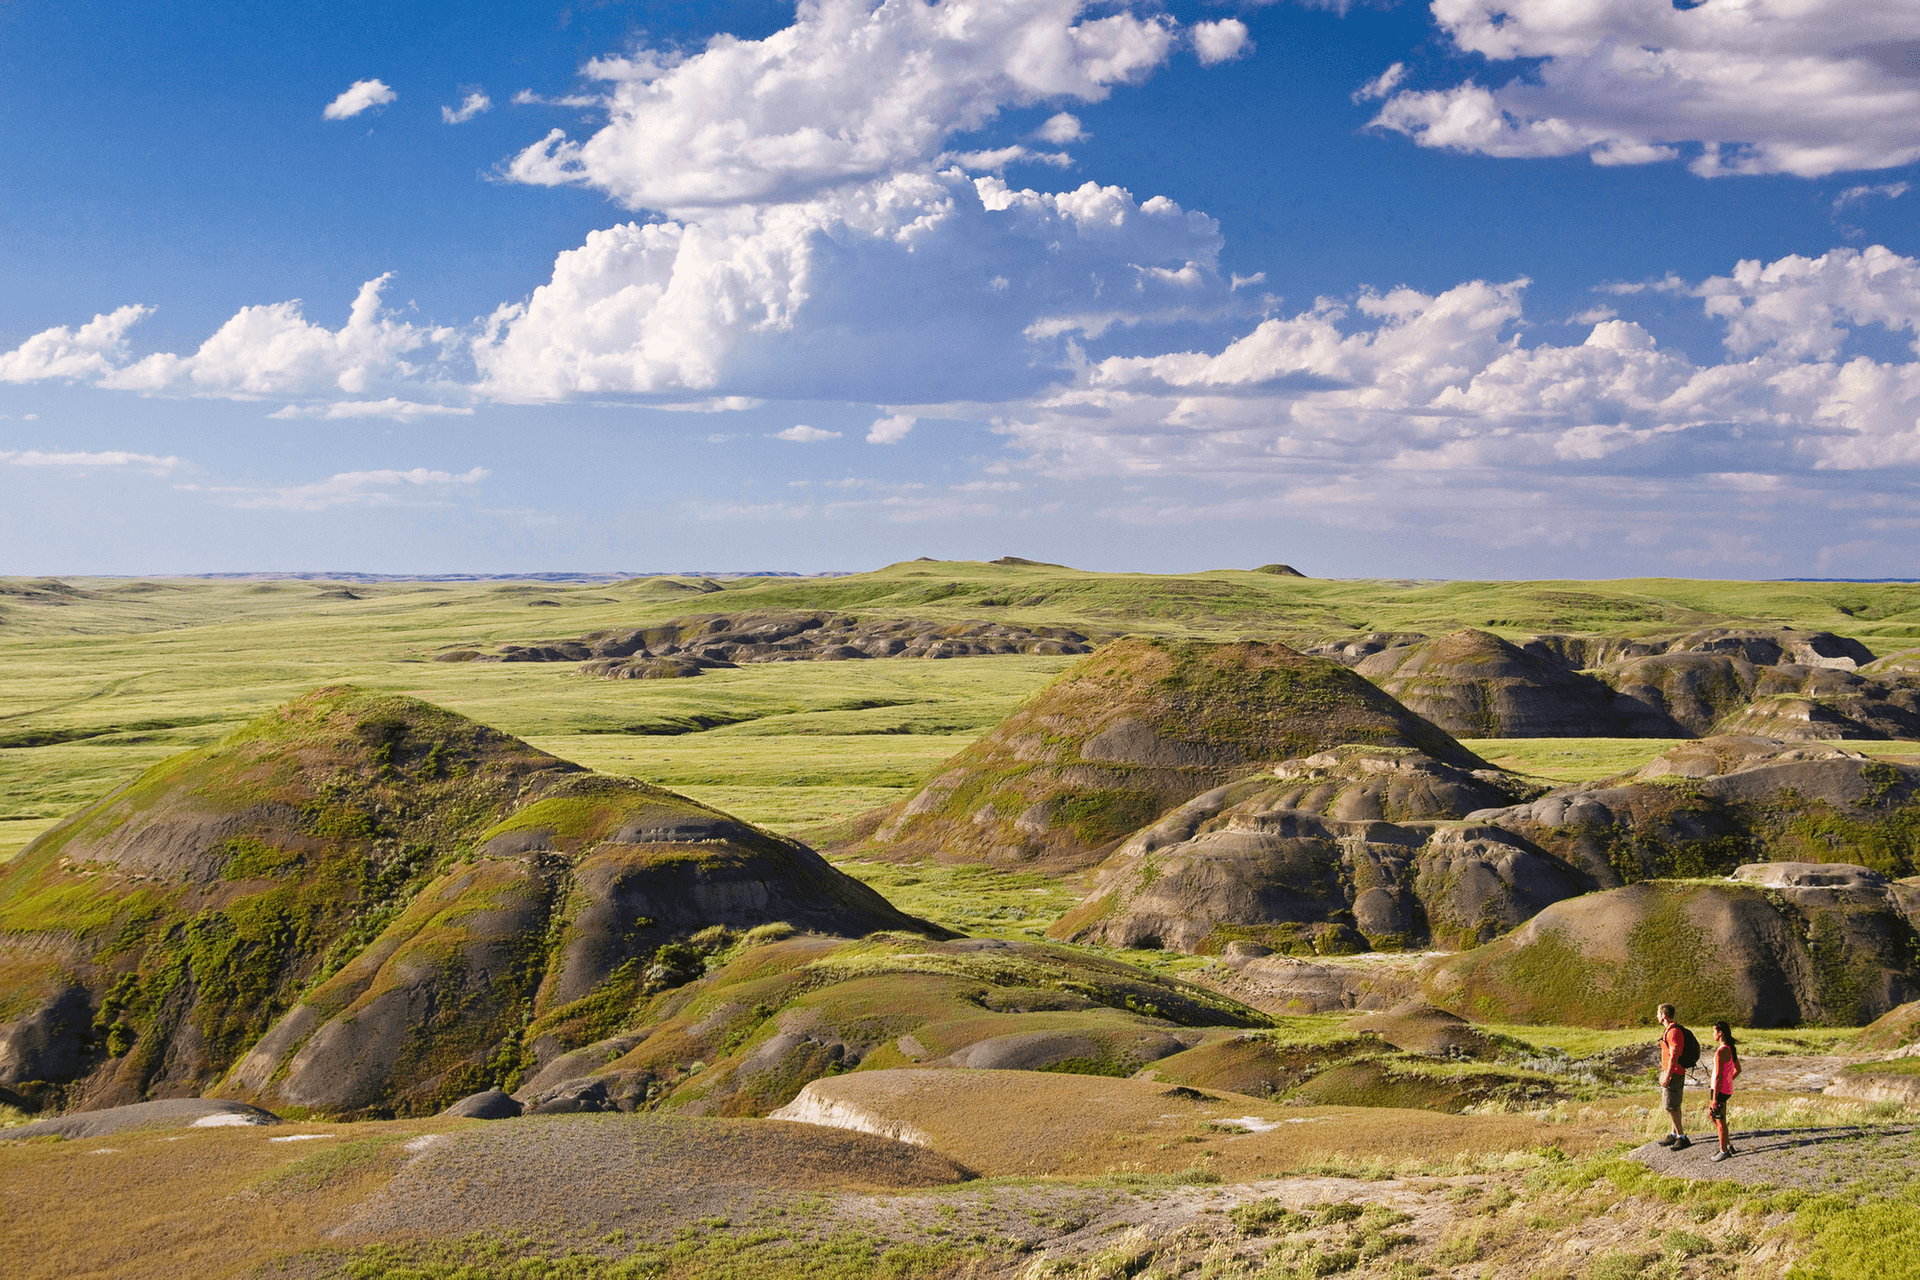 East Block, Grasslands National Park, Saskatchewan